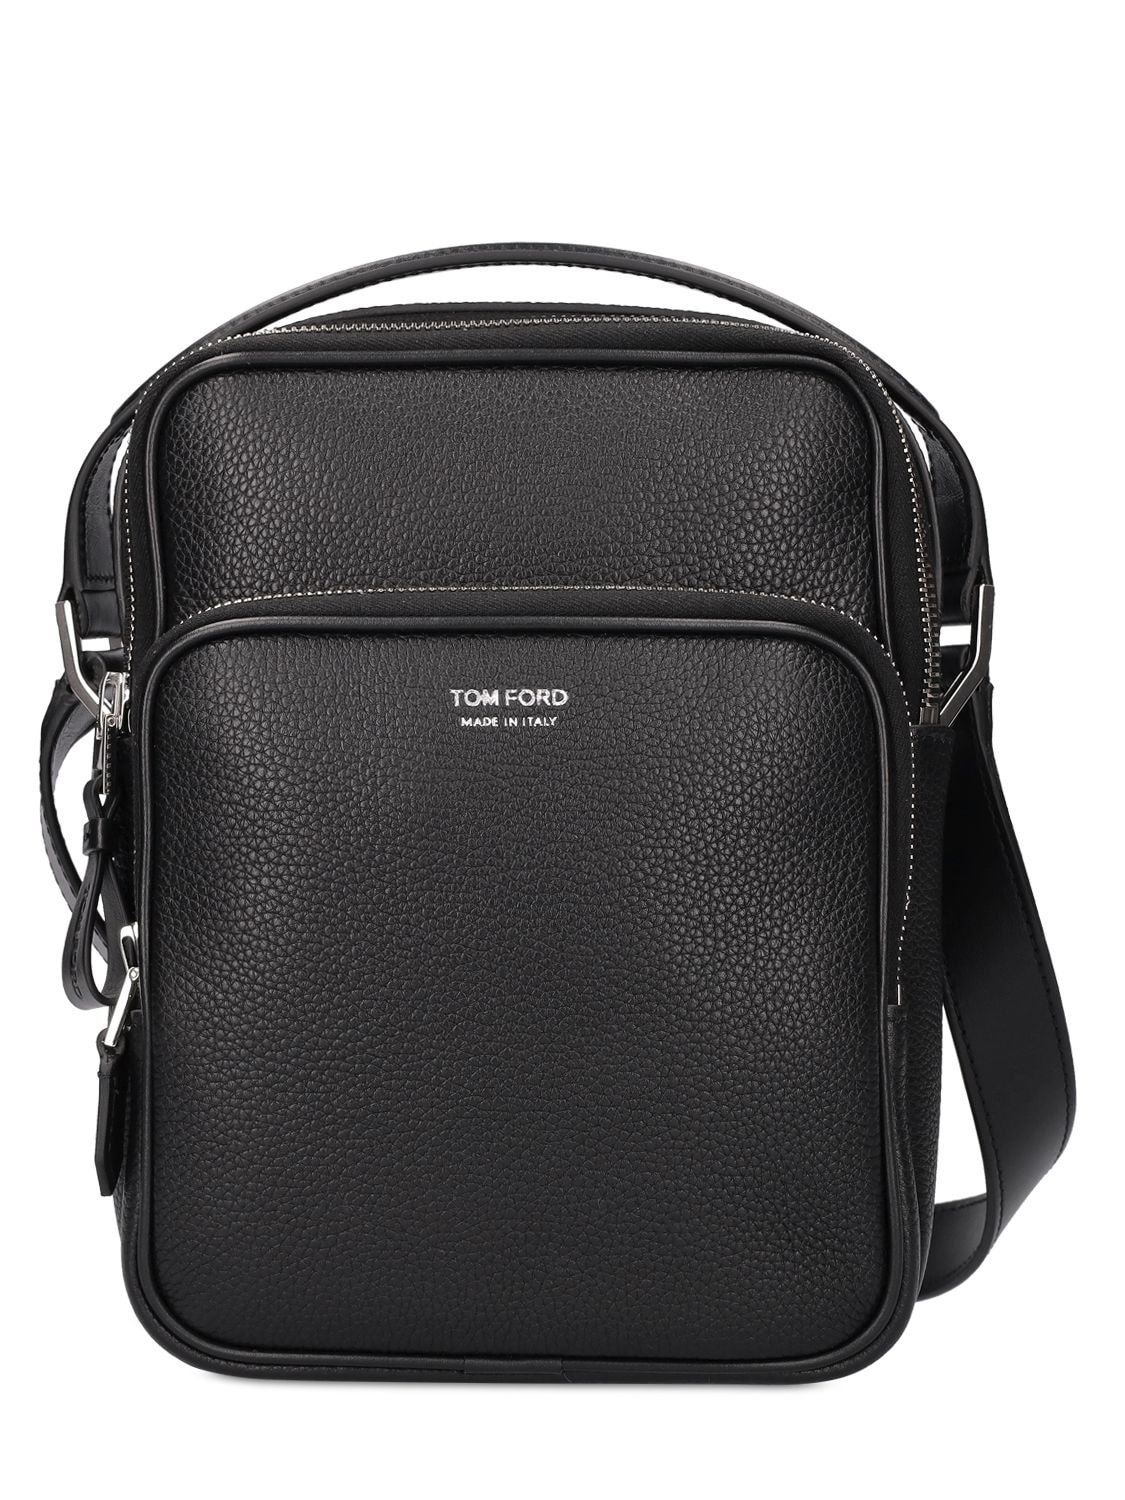 TOM FORD Leather Messenger Bag | Smart Closet